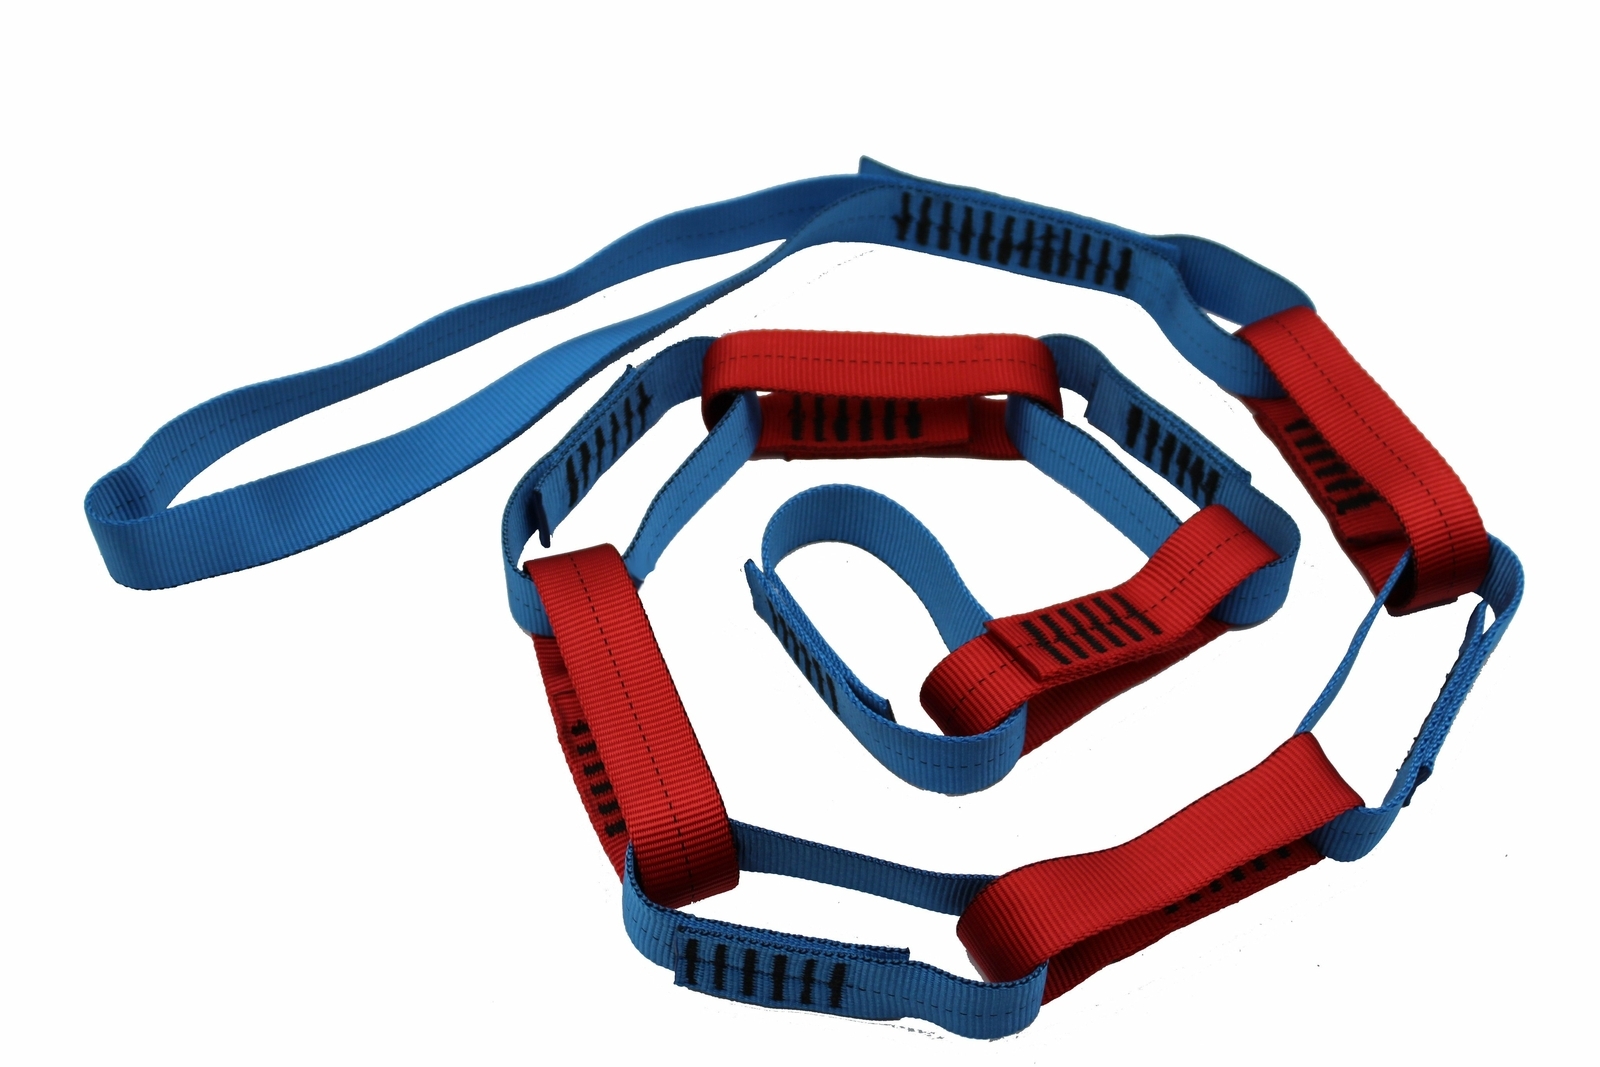 CMI Versachain XL Adjustable Rigging Chain